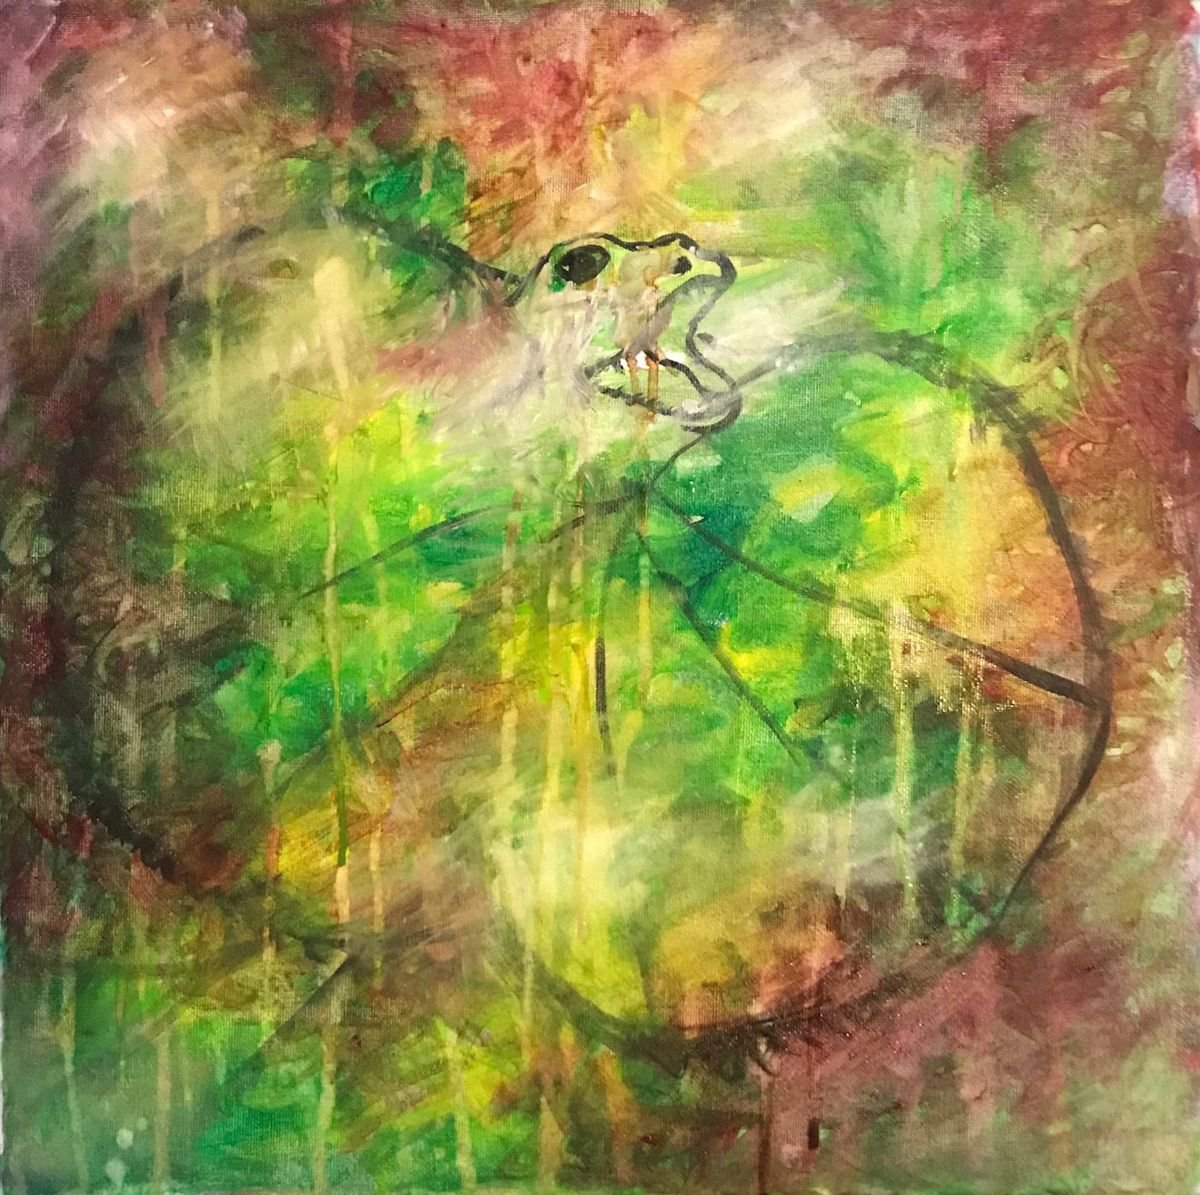 Abstract Frilled Neck Lizard CZ18015 by Carol Zsolt